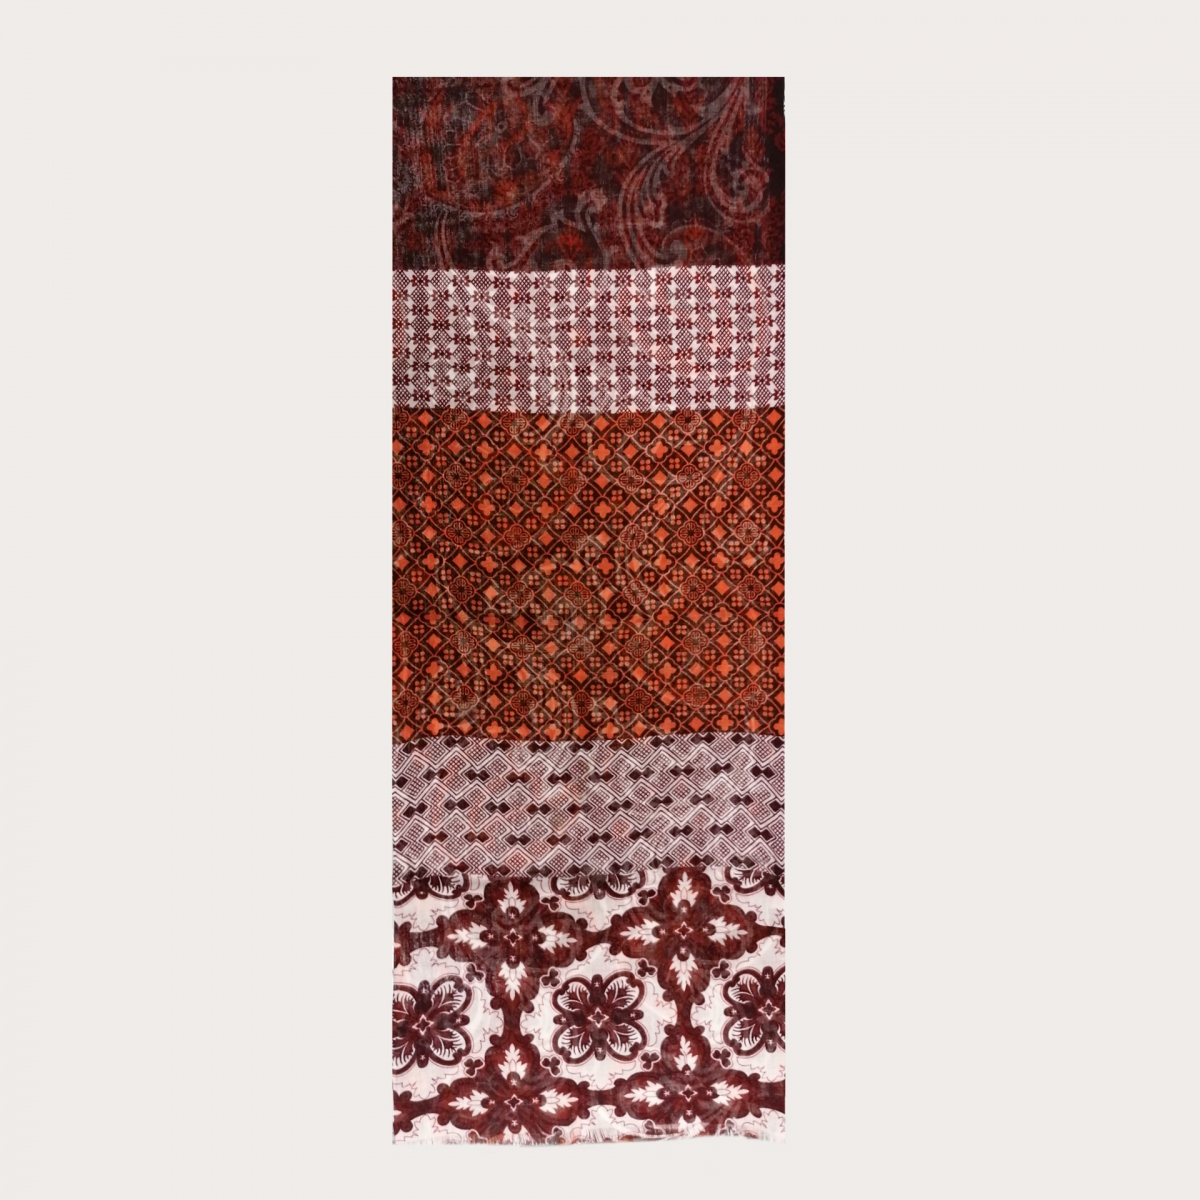 Bufanda de lana tubular con motivo paisley, marrón y naranja